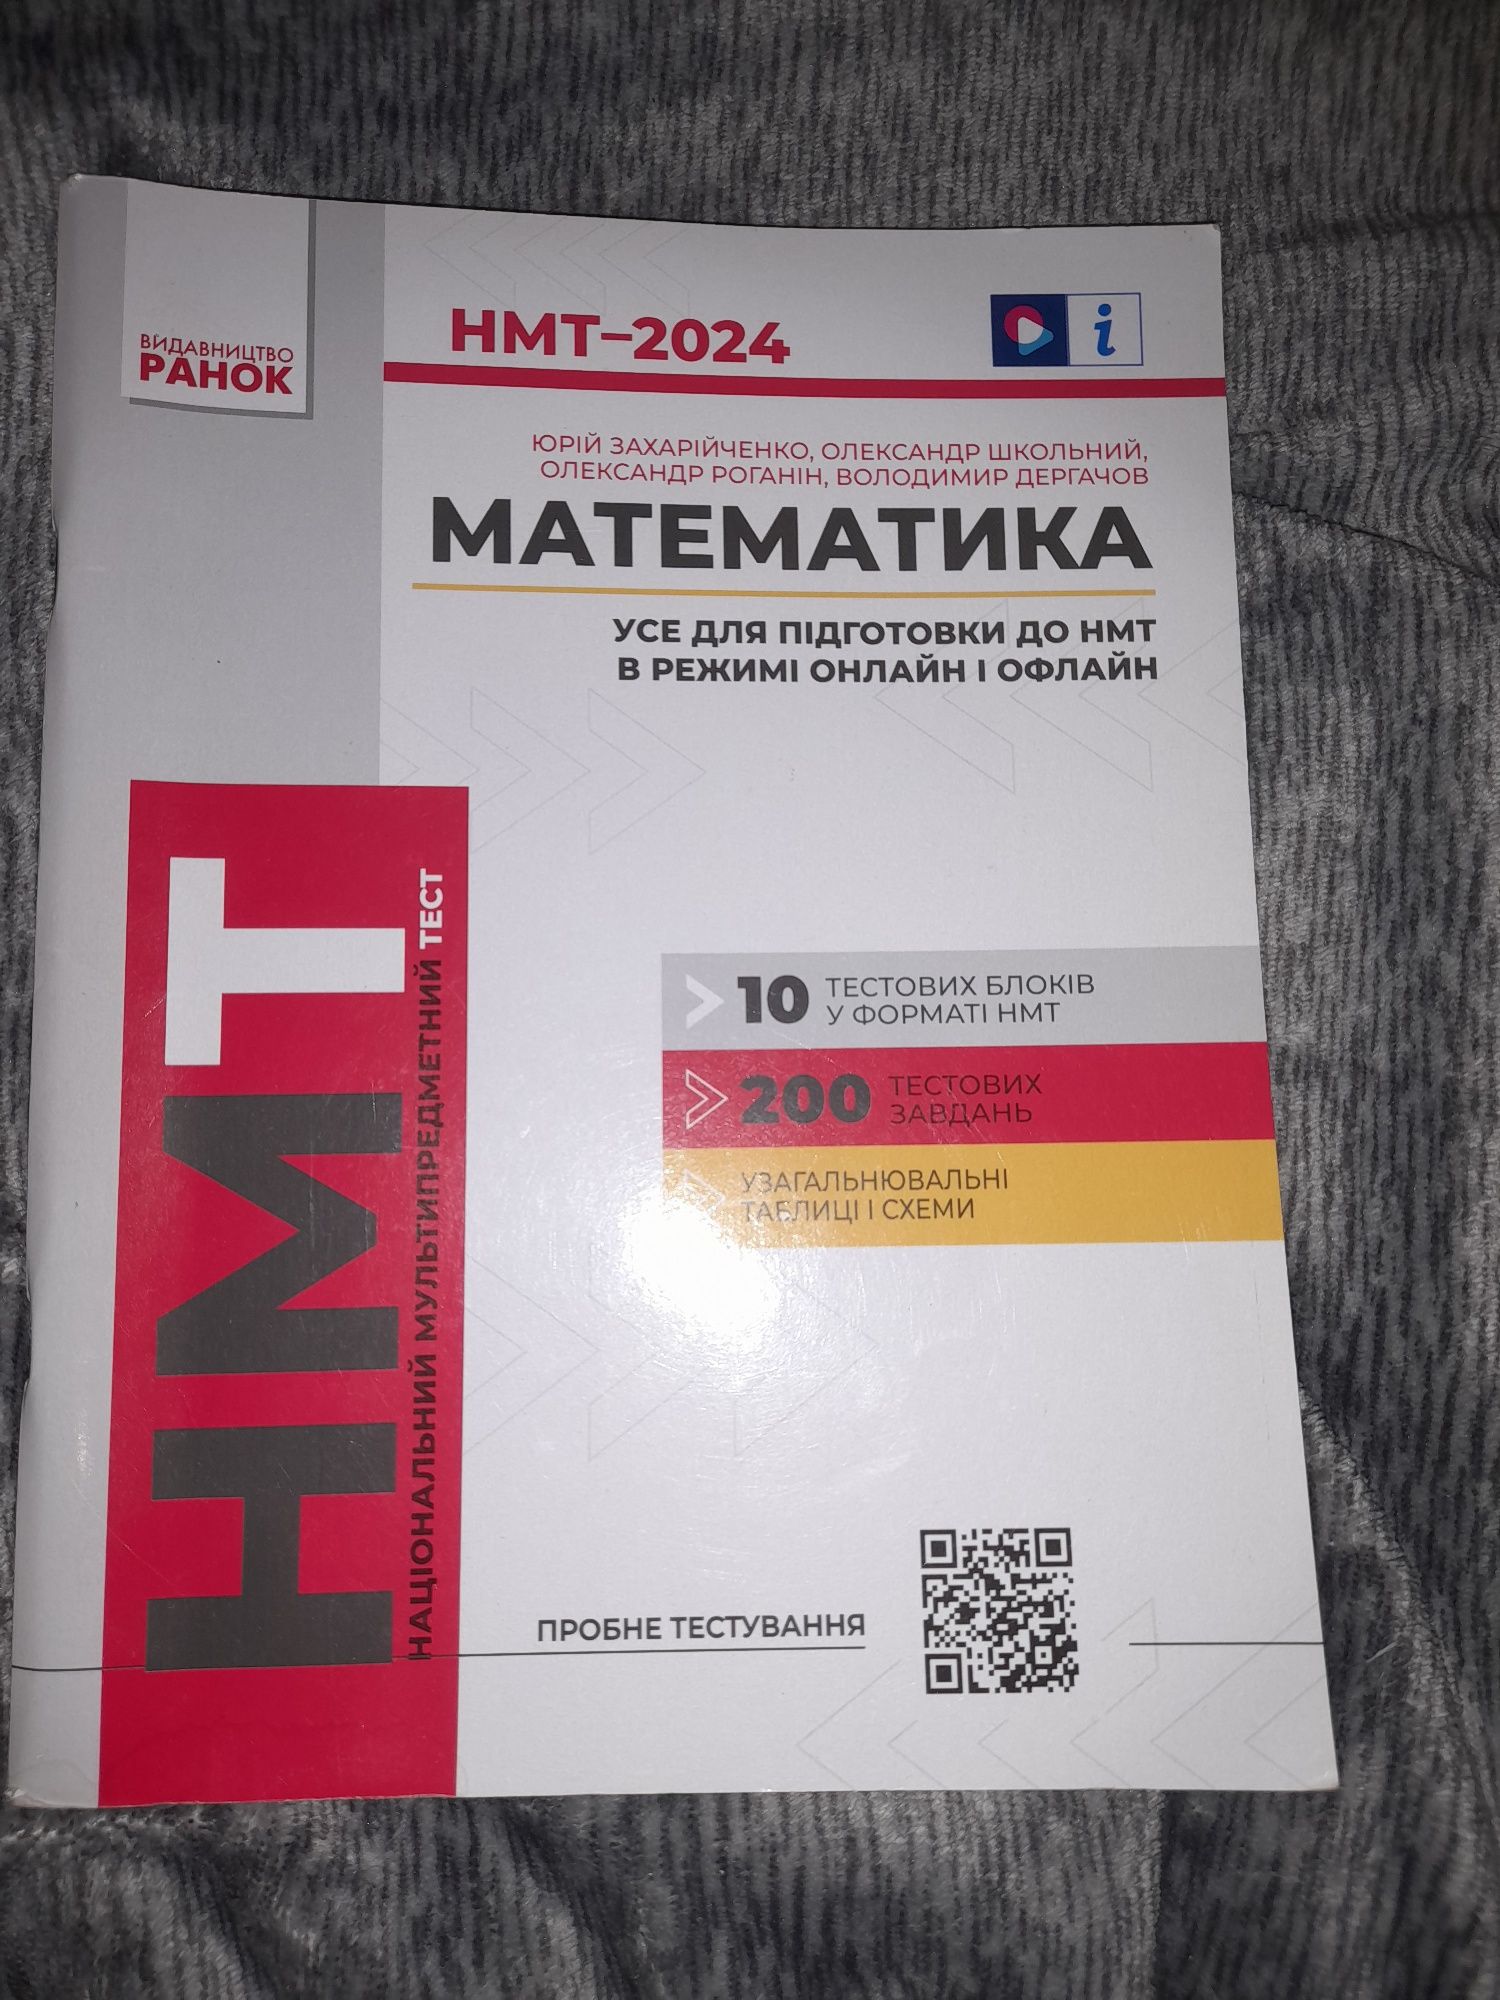 Посібники НМТ 2024 з математики та історії України  нові